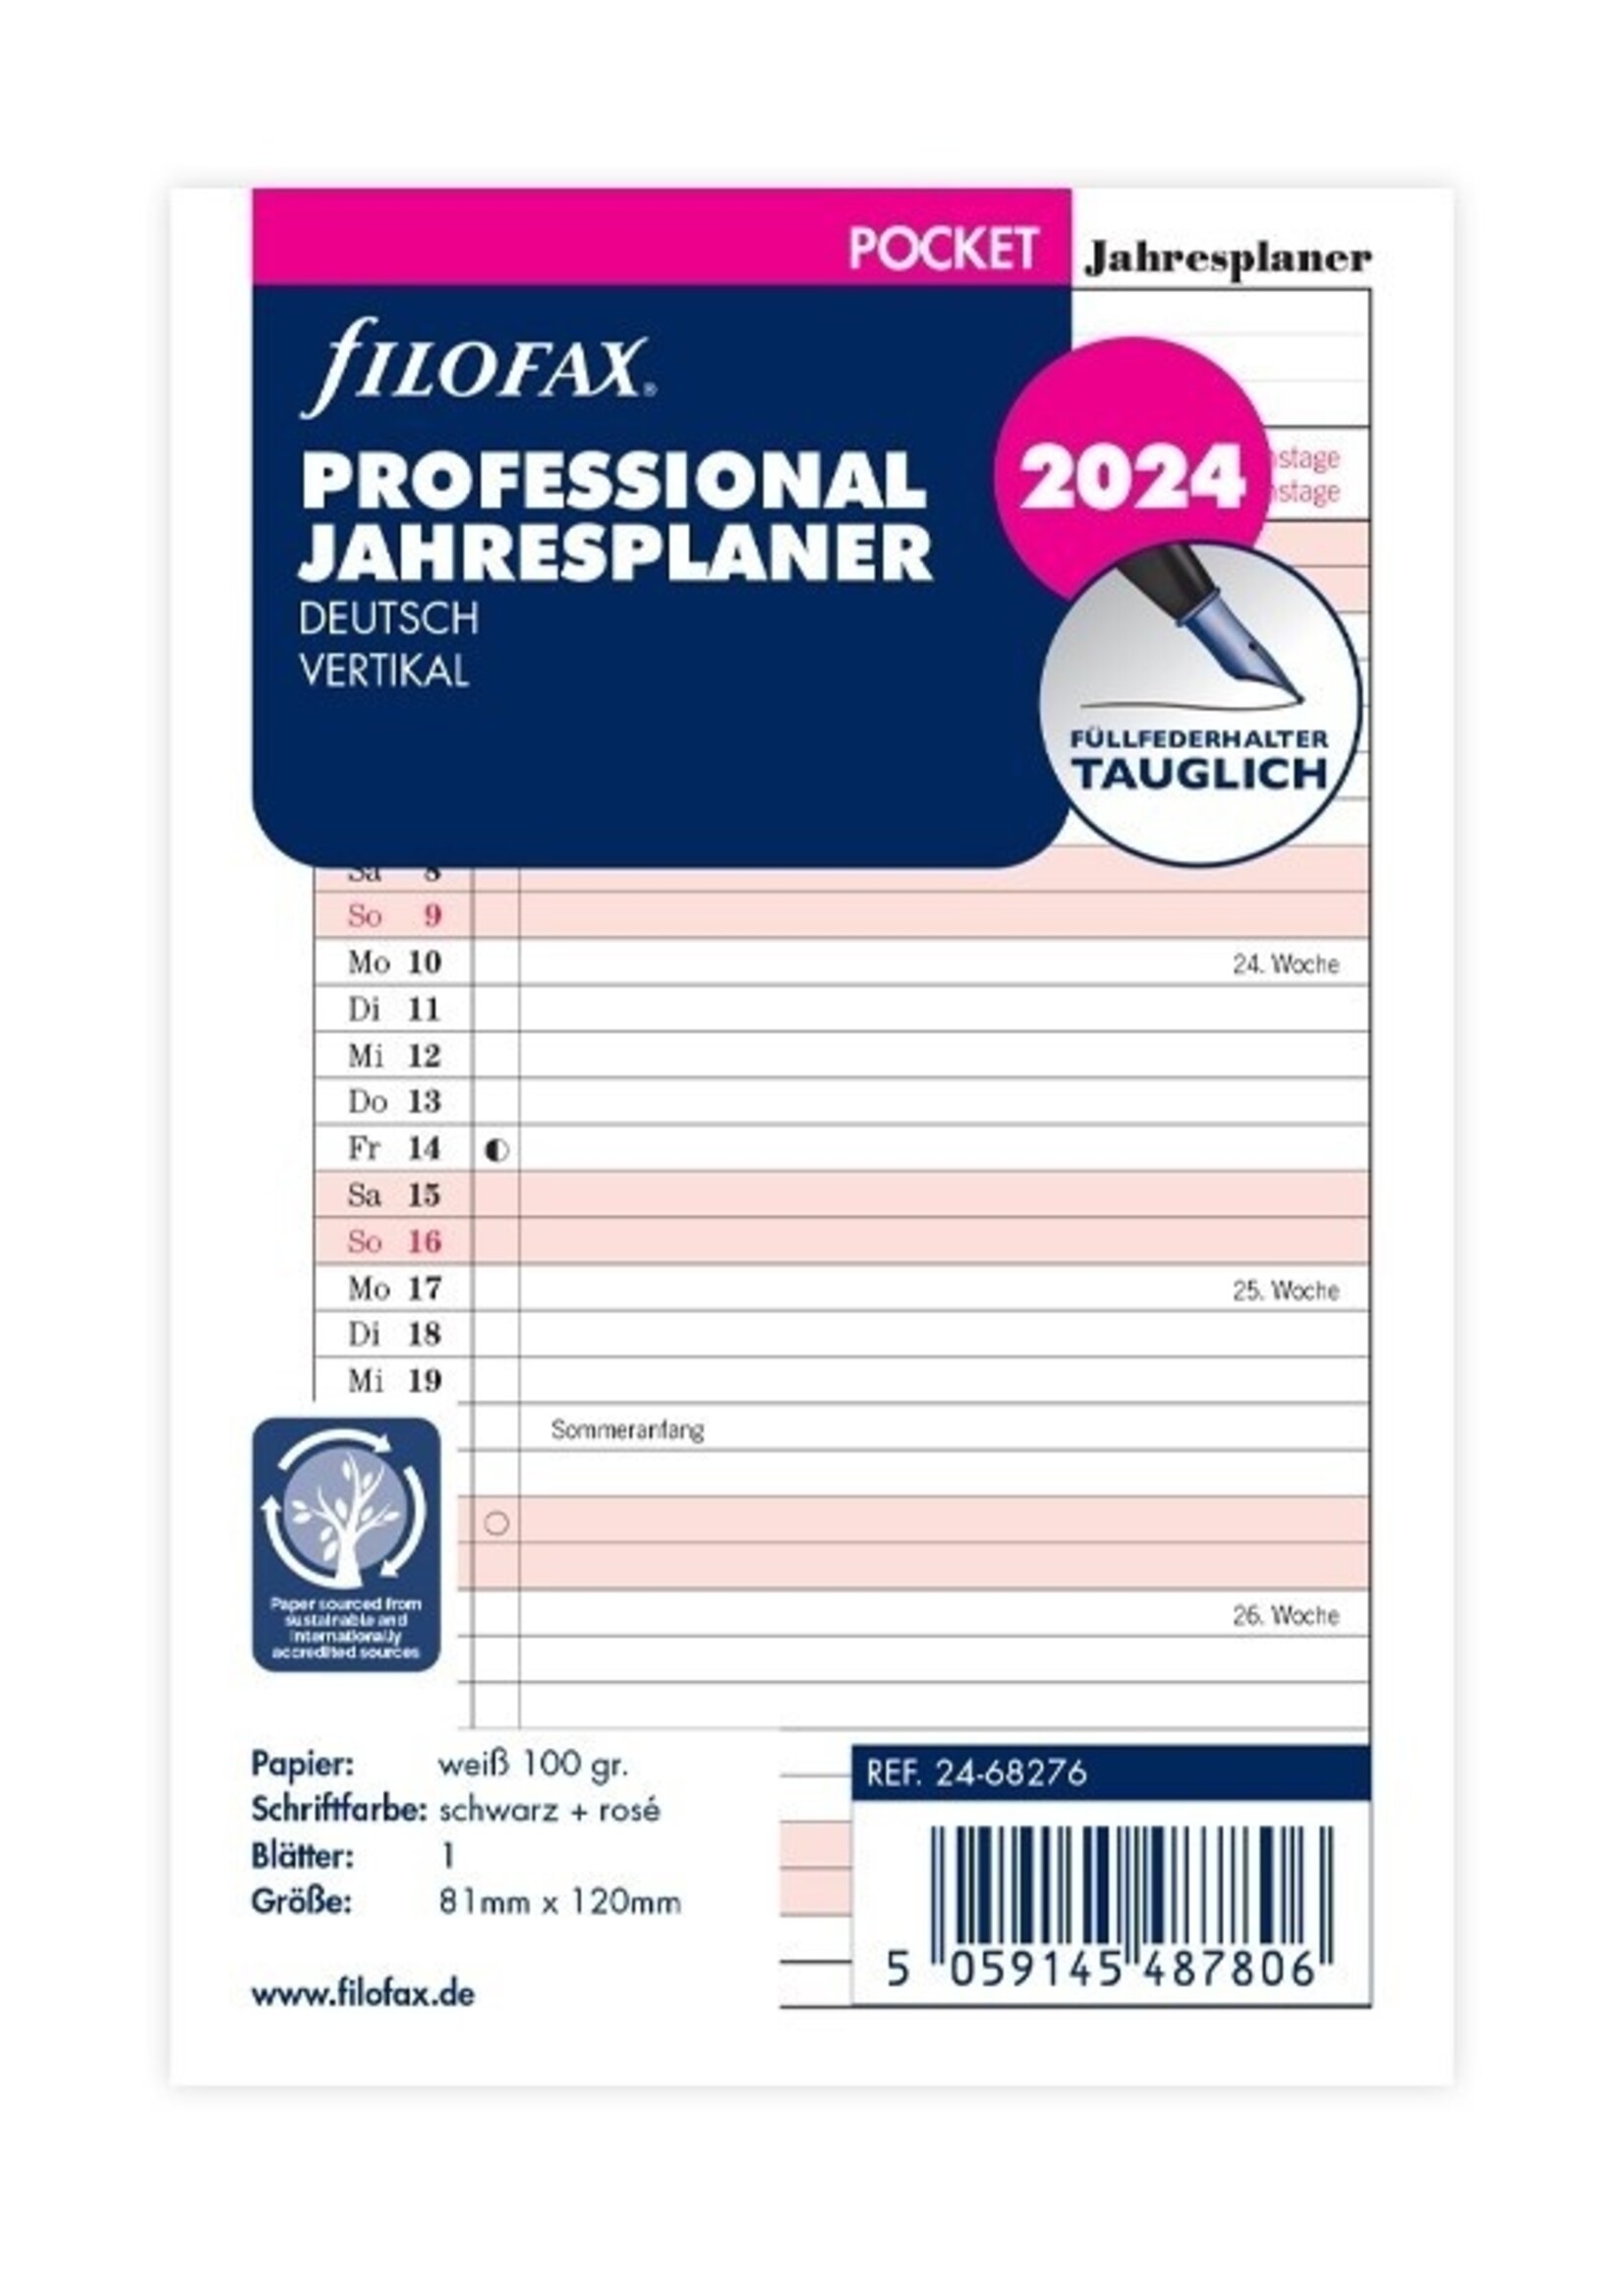 Filofax Pocket Kalendereinlage 2024 Jahresplan Leporello Professional